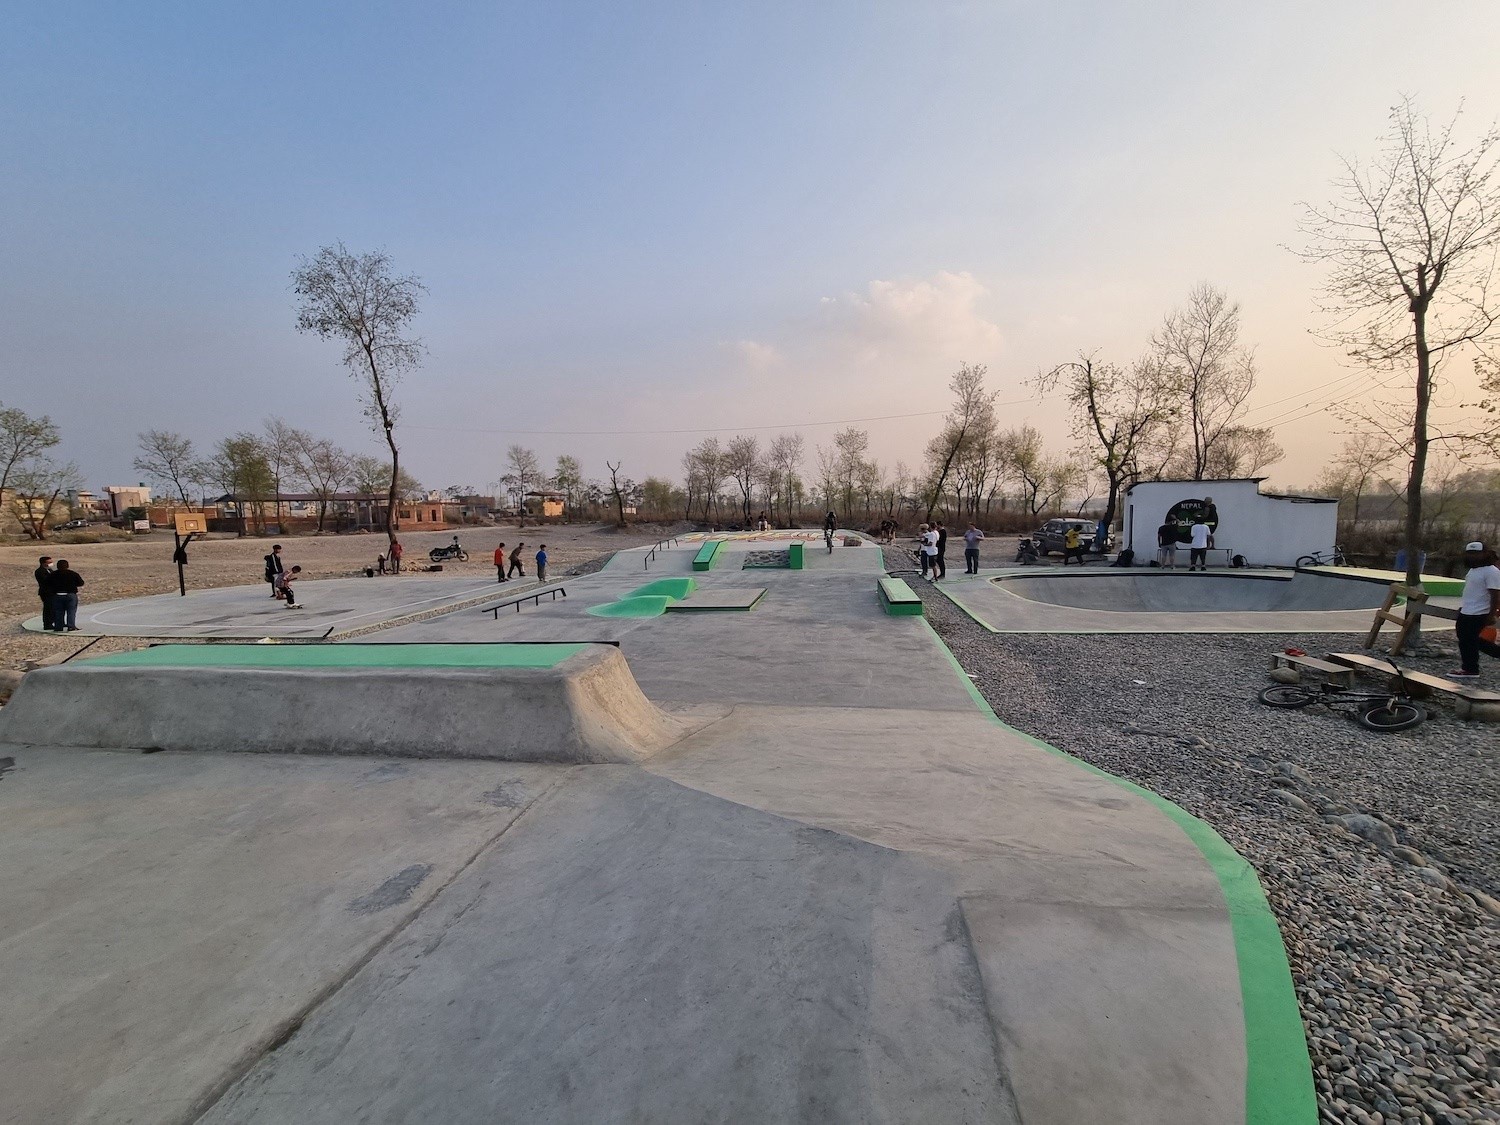 Dhunga Skate-aid Butwal Skatepark